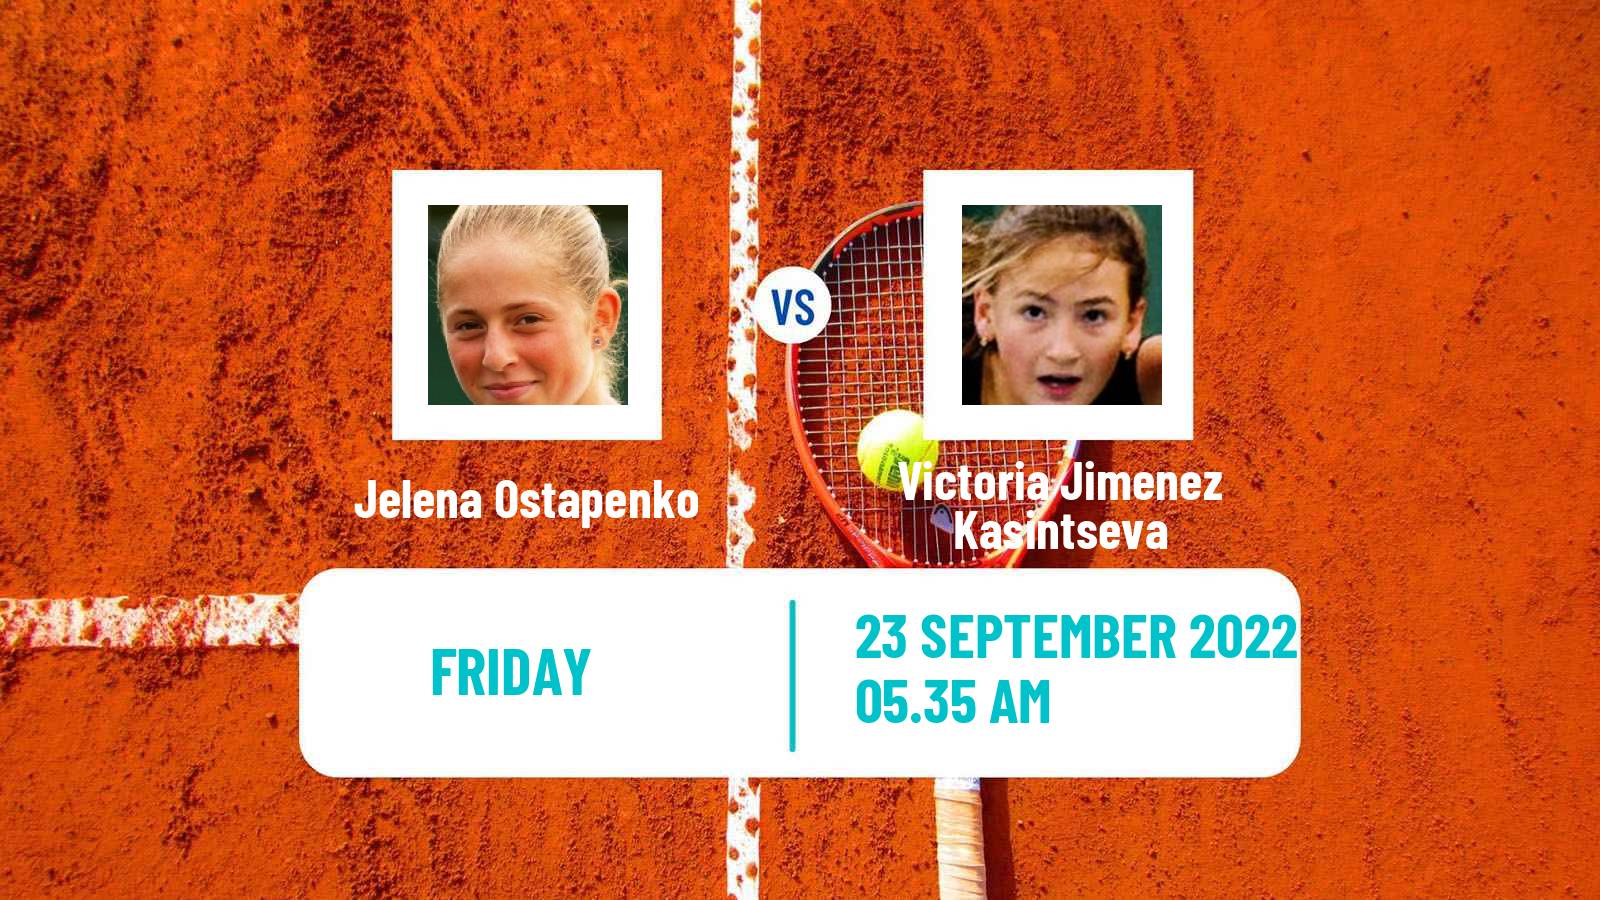 Tennis WTA Seoul Jelena Ostapenko - Victoria Jimenez Kasintseva